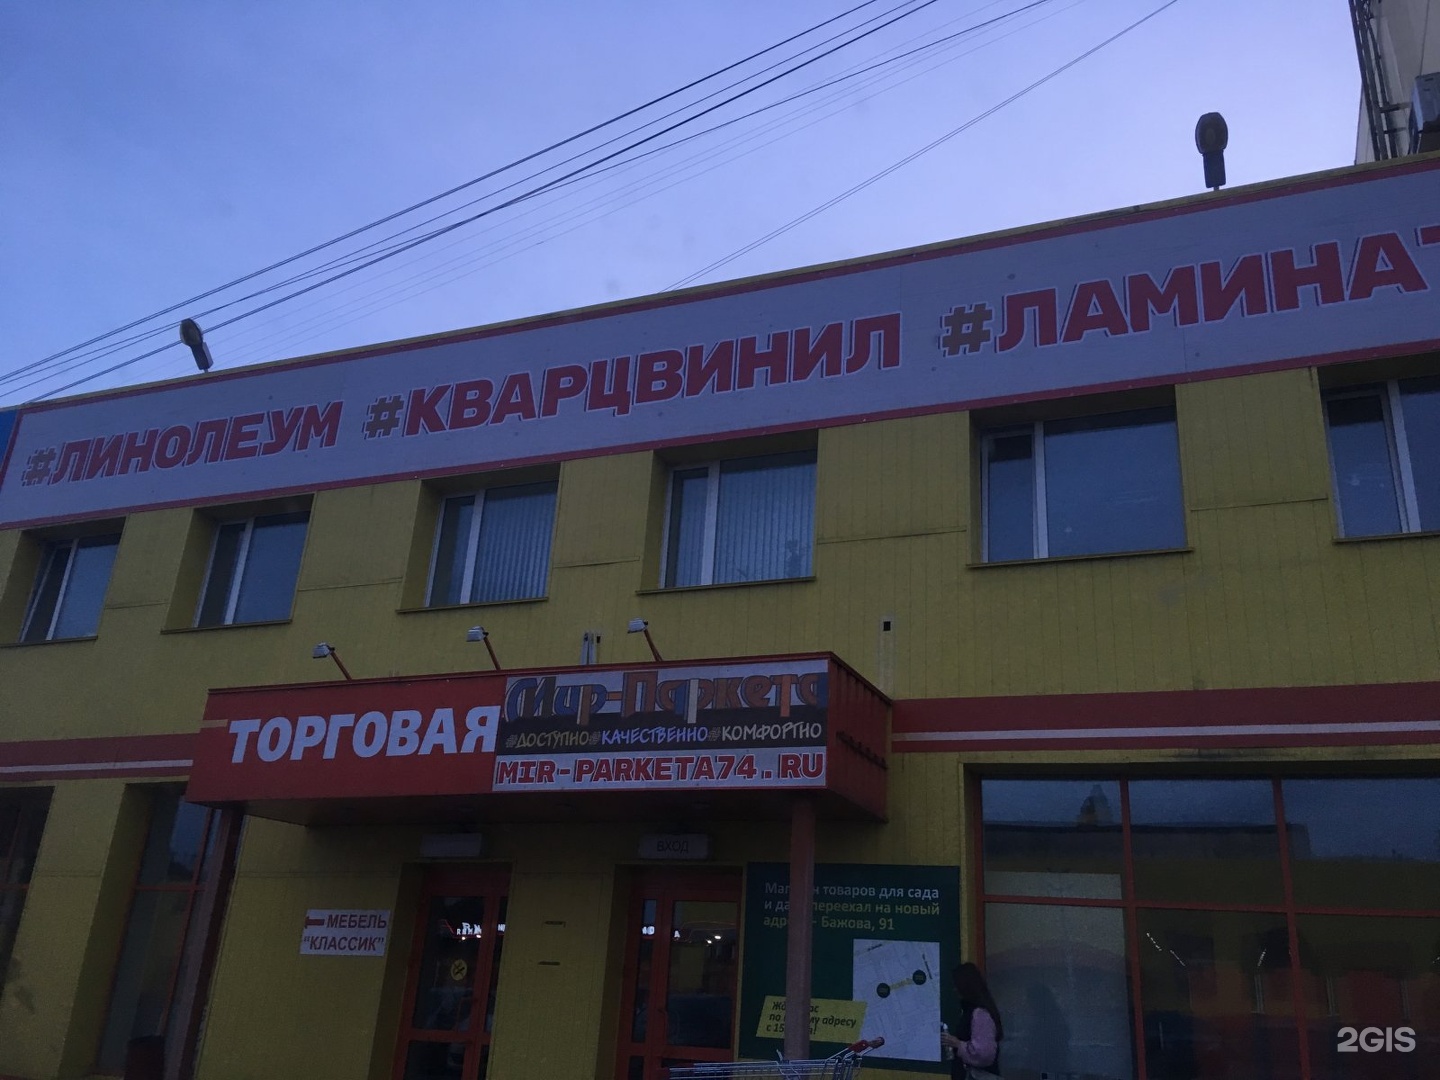 Мир Челябинск Интернет Магазин